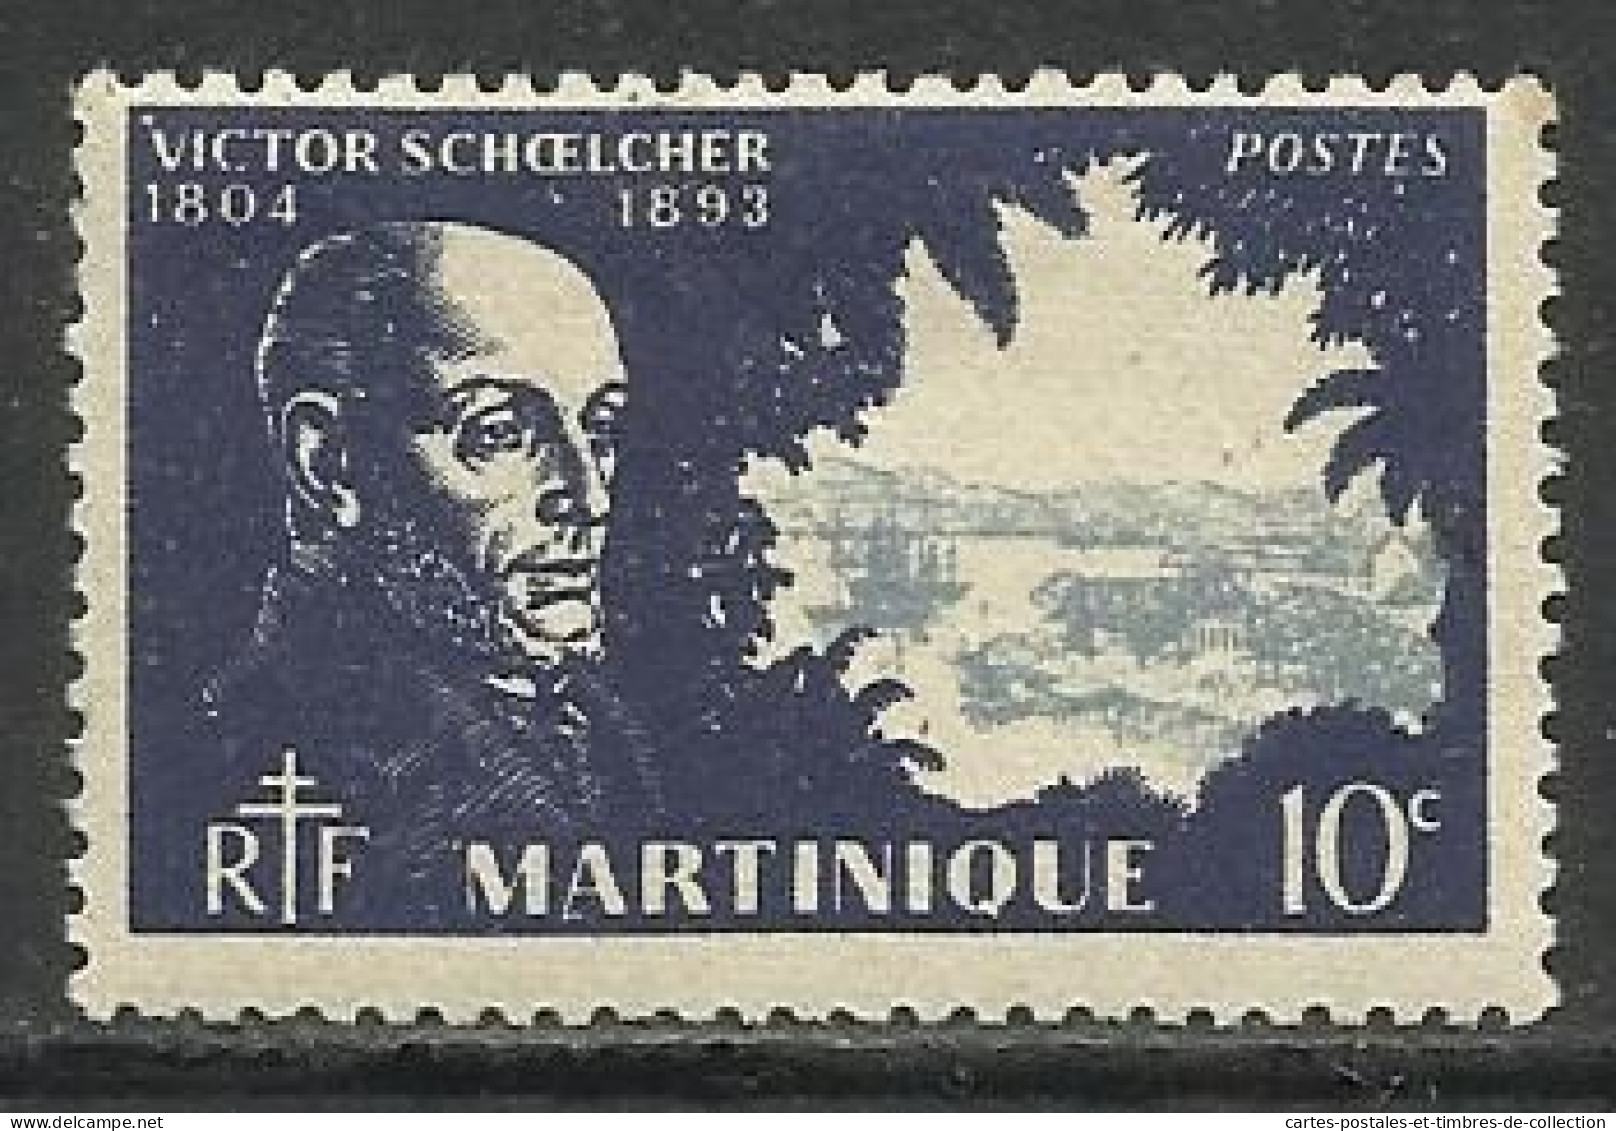 MARTINIQUE , Lot de 12 timbres , 1908 - 1947 , voir scans